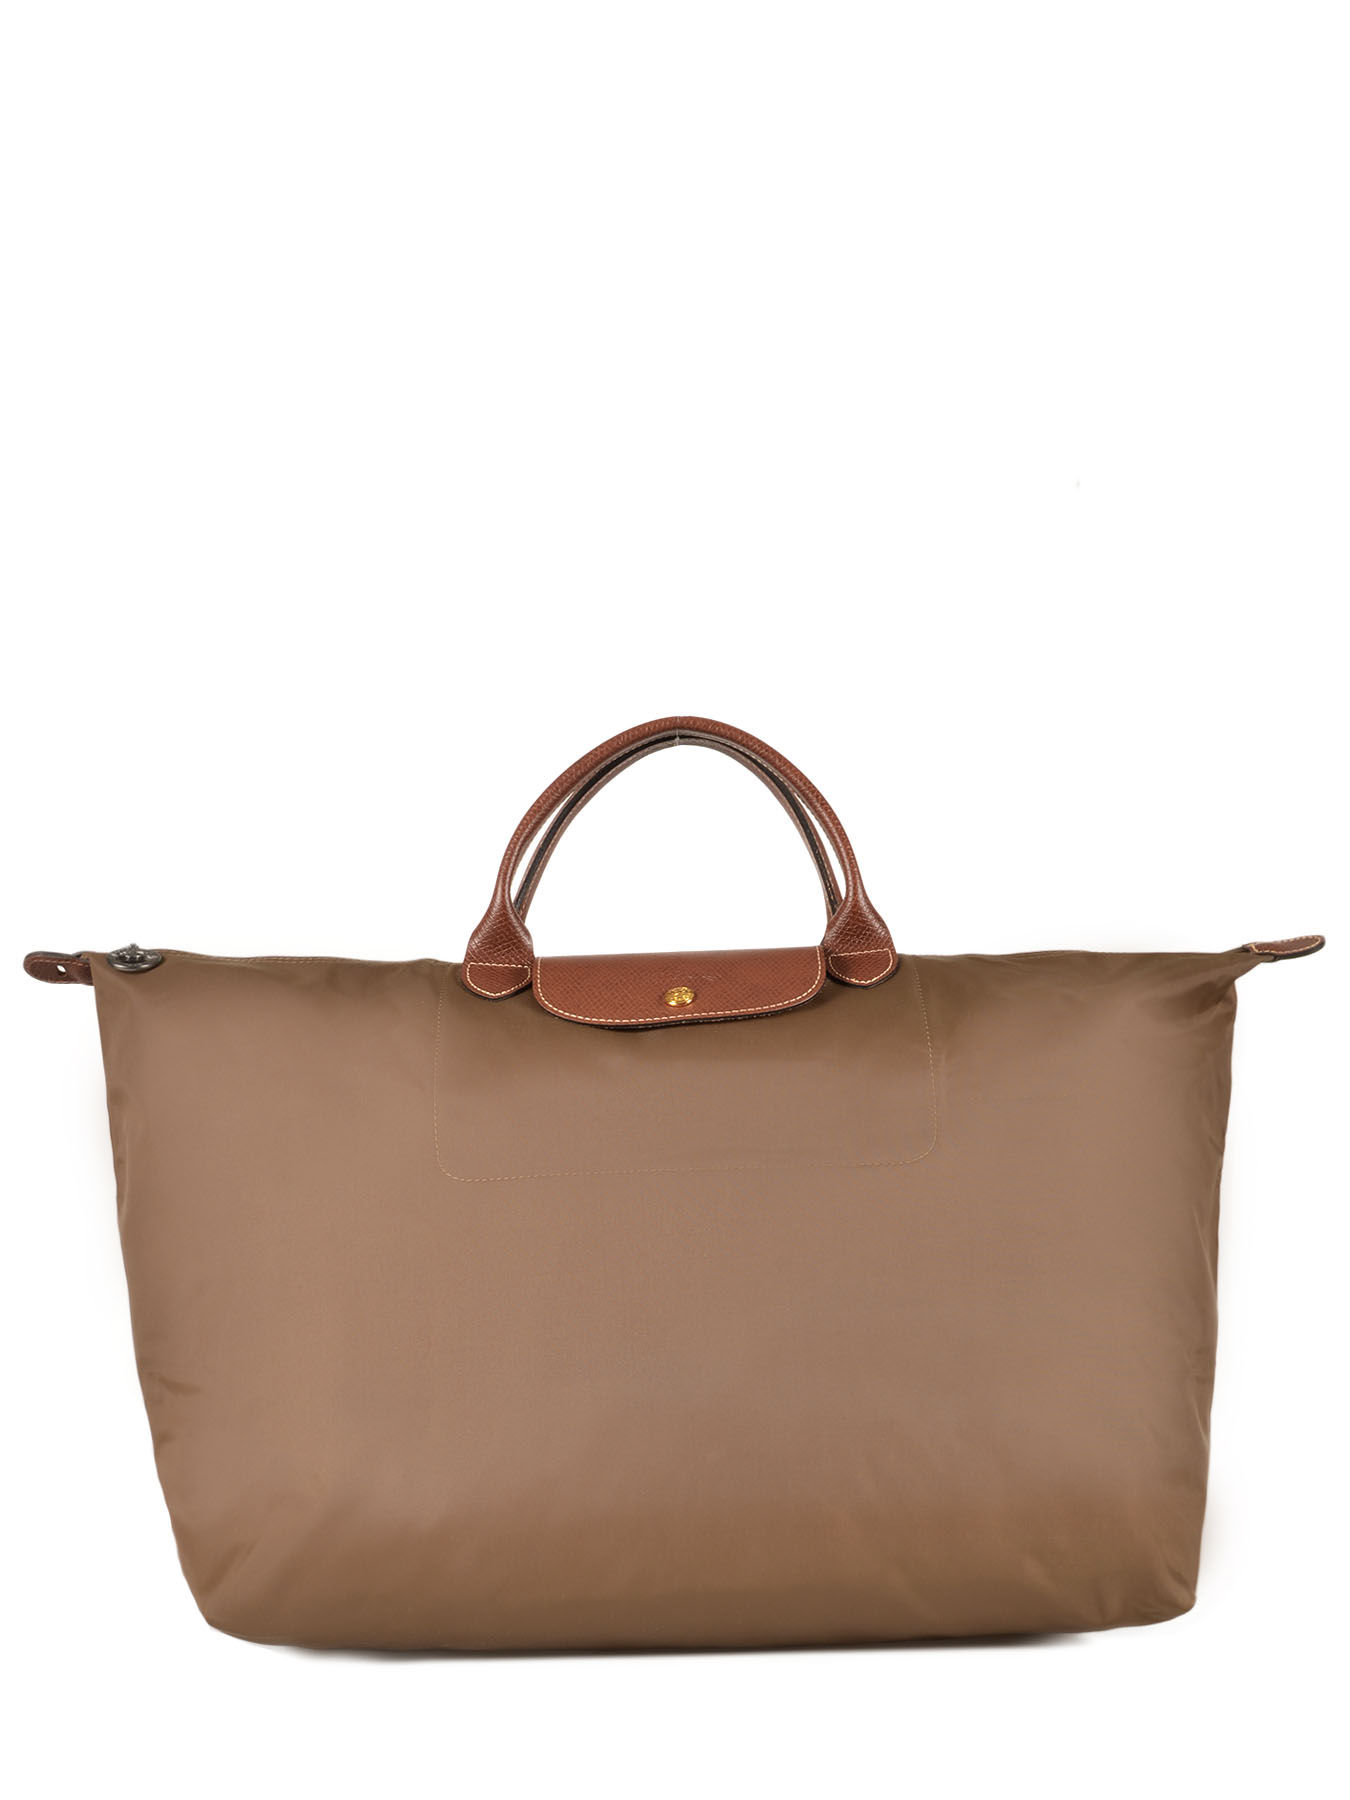 Longchamp Travel bag Le pliage - Best prices